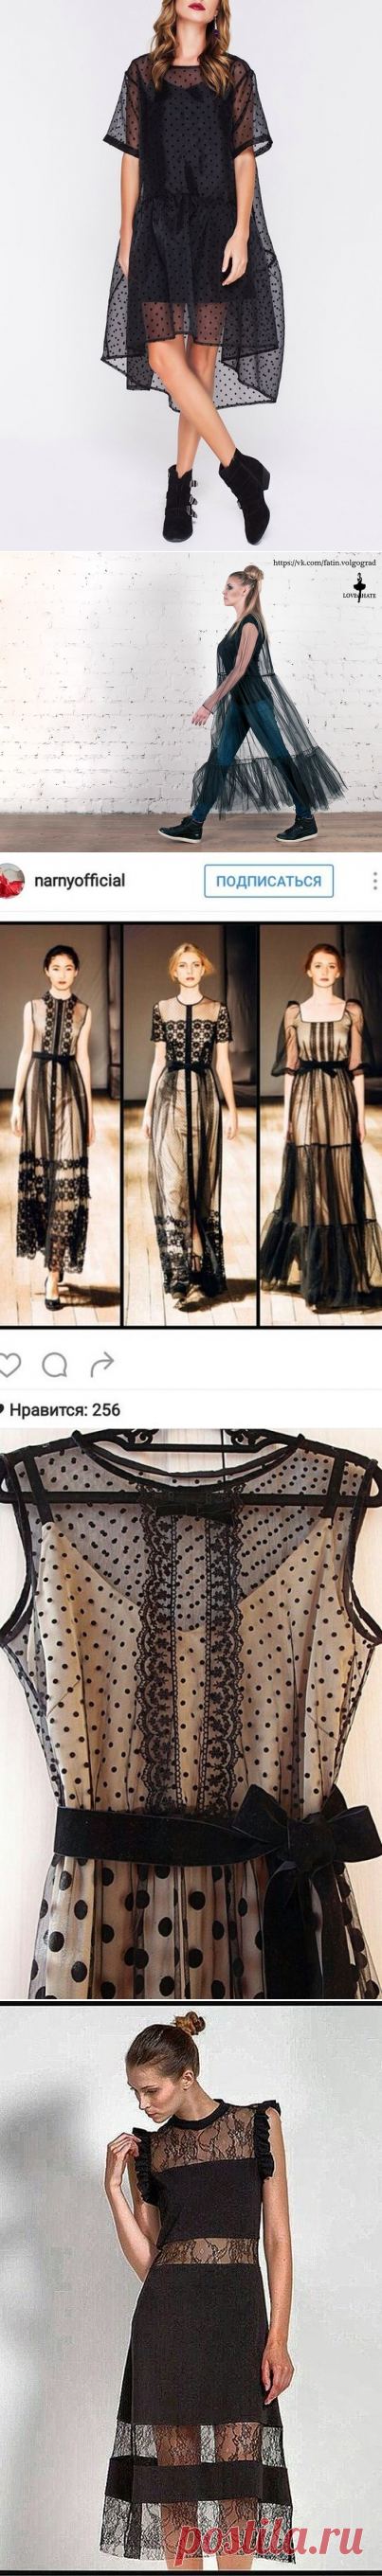 Little black dress - как сшить платье футляр - запись пользователя Наталья (natka777) в сообществе Рукоделие в категории Шитье одежды, выкройки, ремонт одежды, шторы, швейные машины (уже приобретенные) - Babyblog.ru